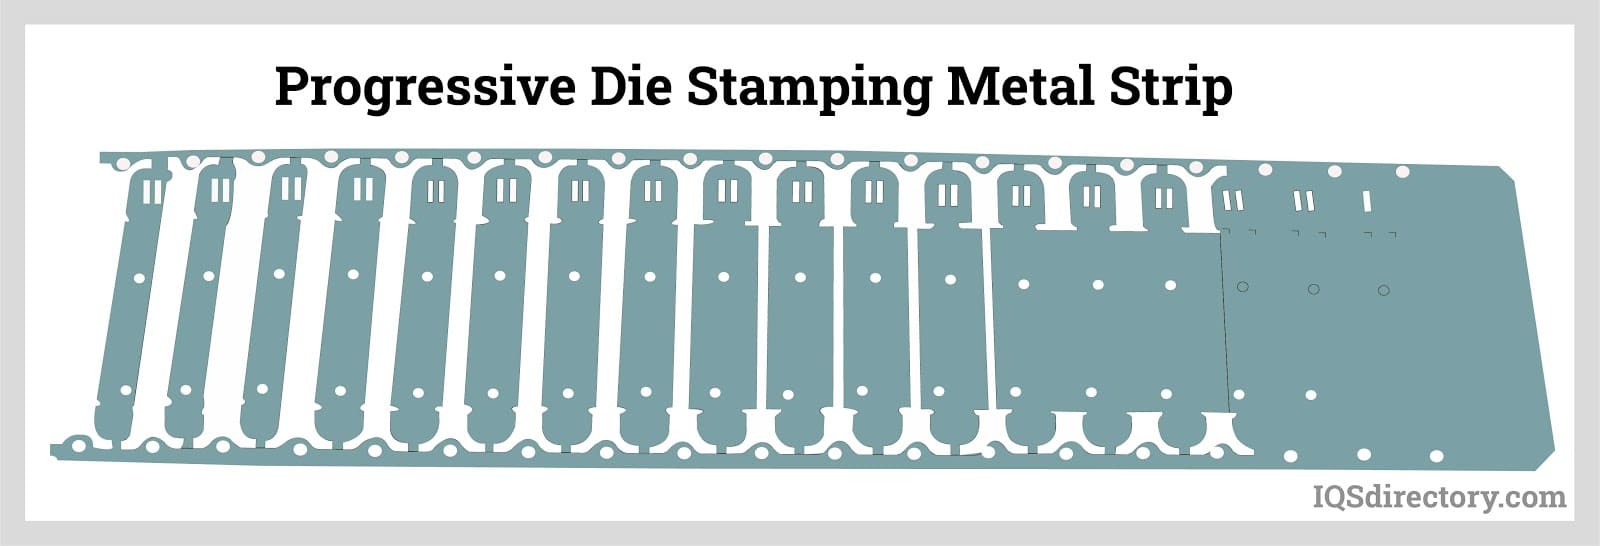 Progressive Die Stamping Metal Strip